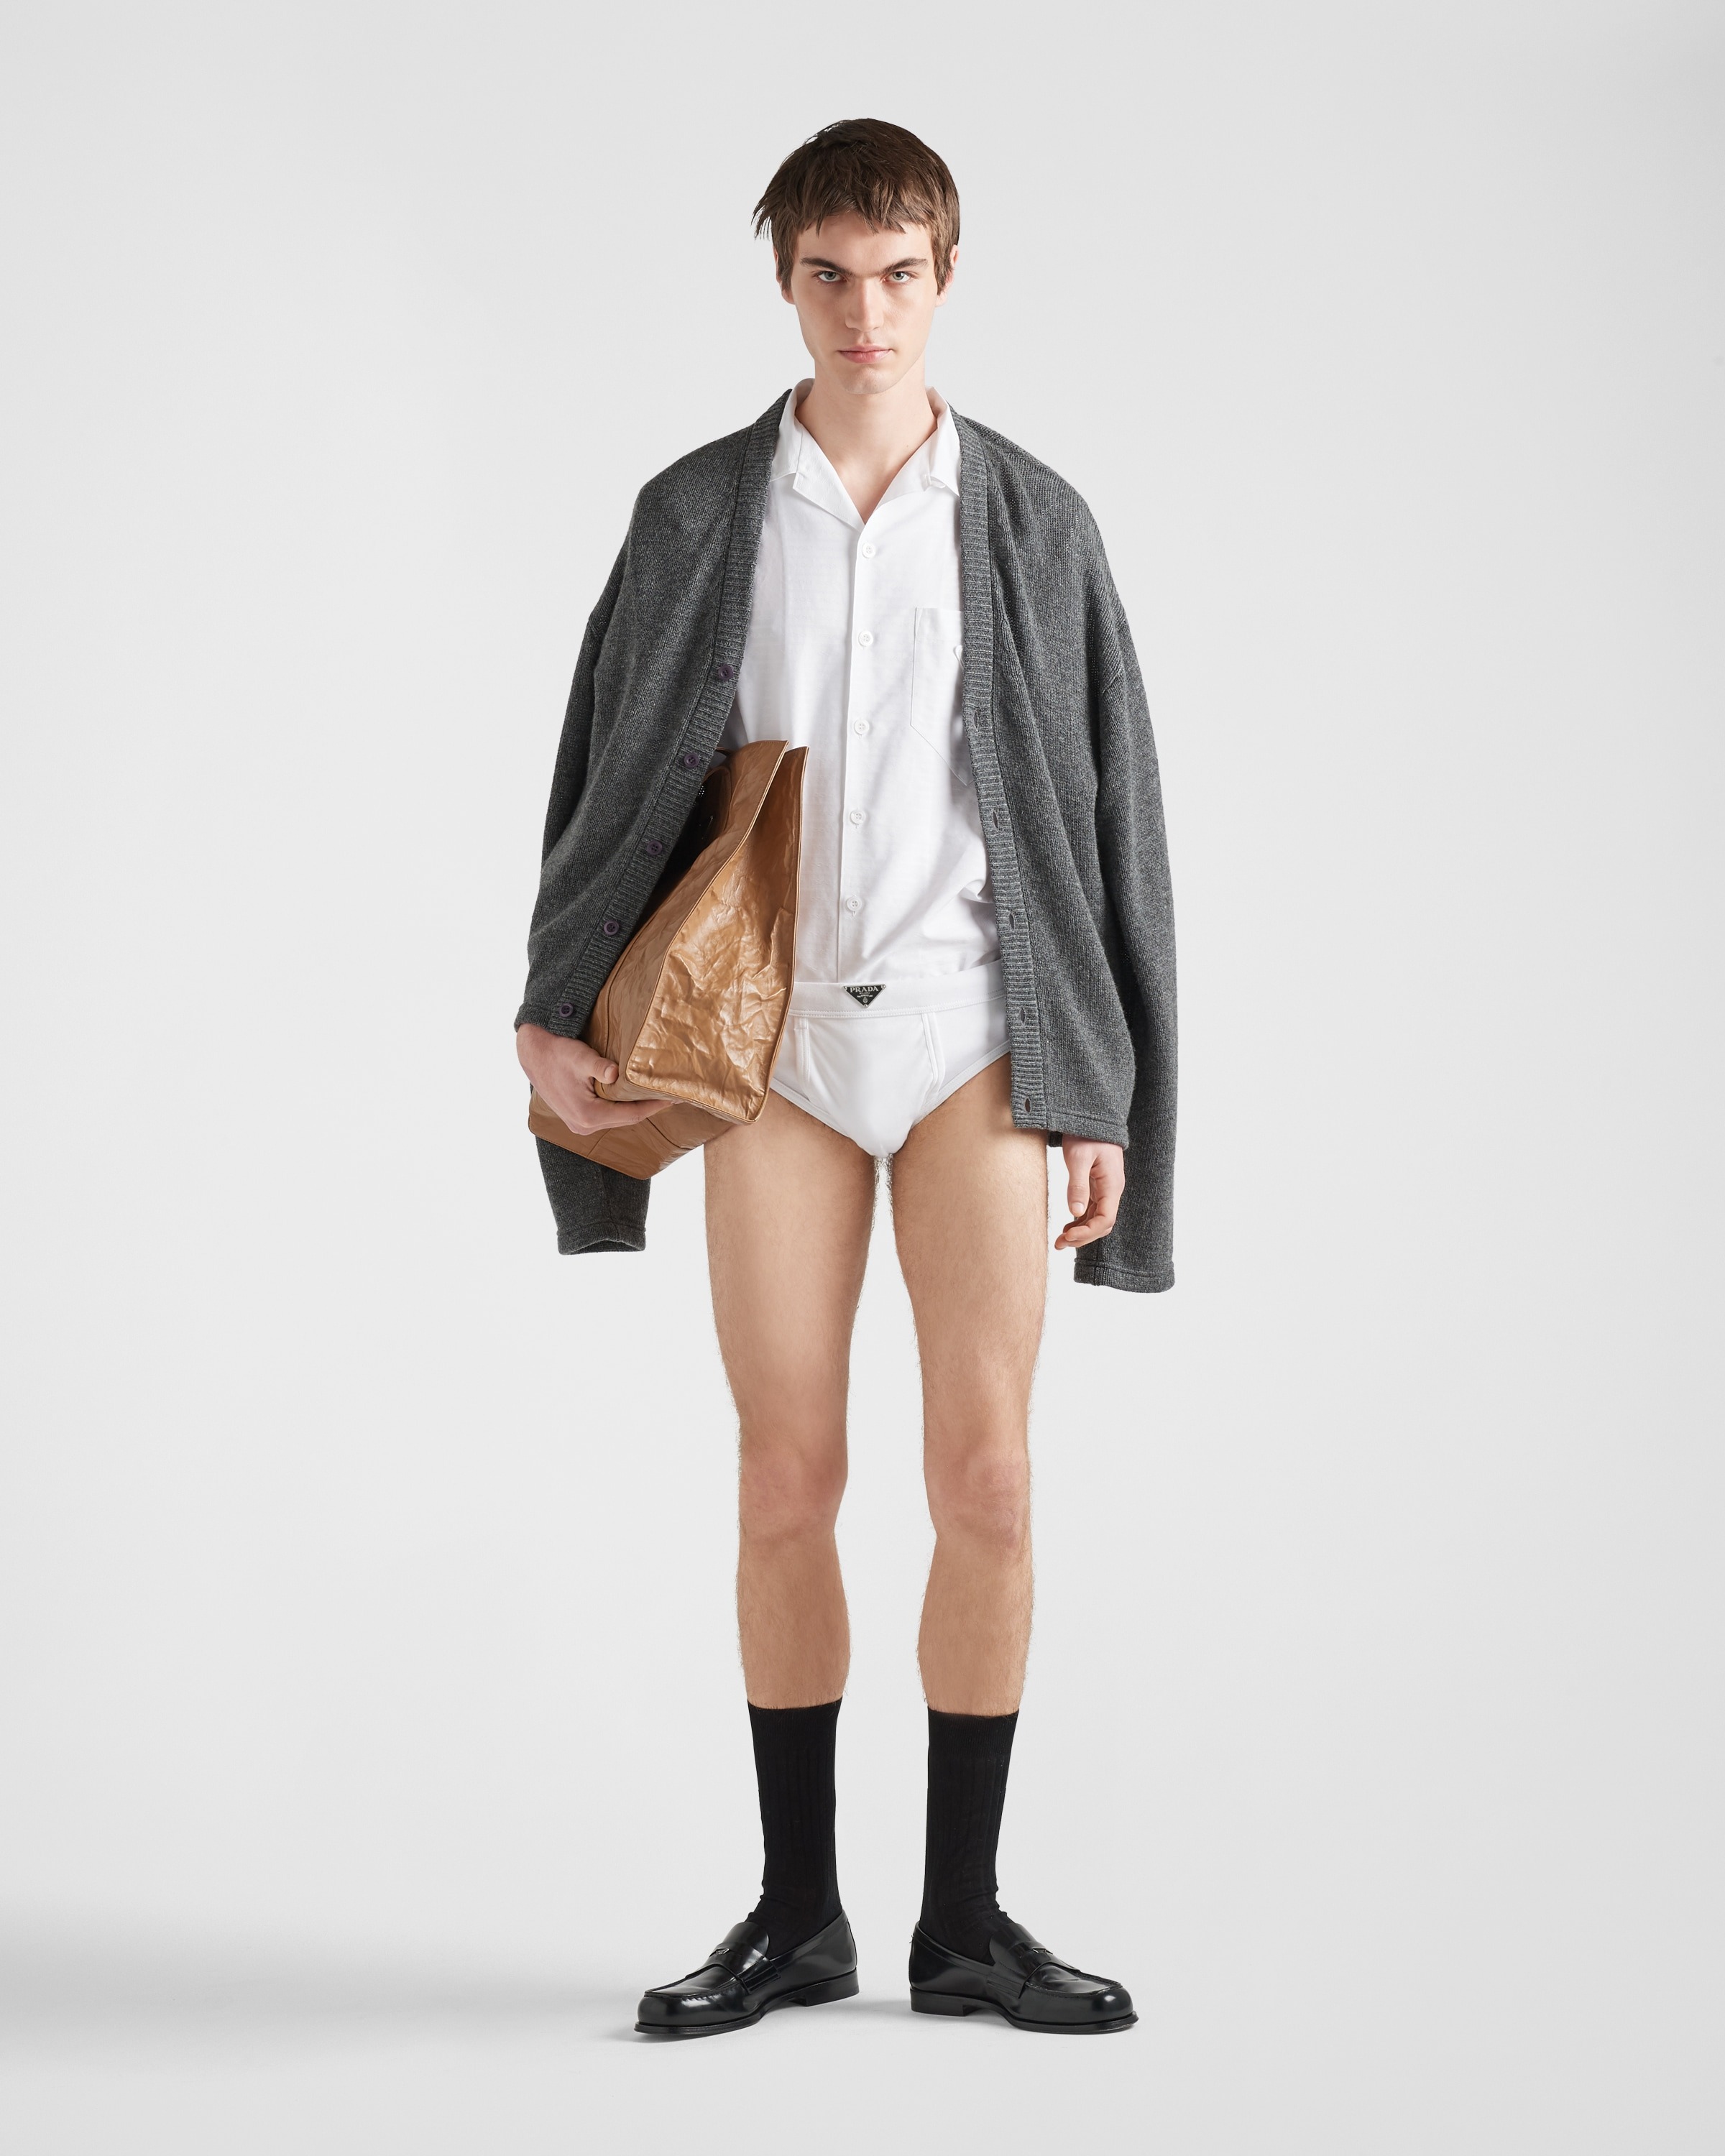 A male model wears Prada's $650 cotton underwear